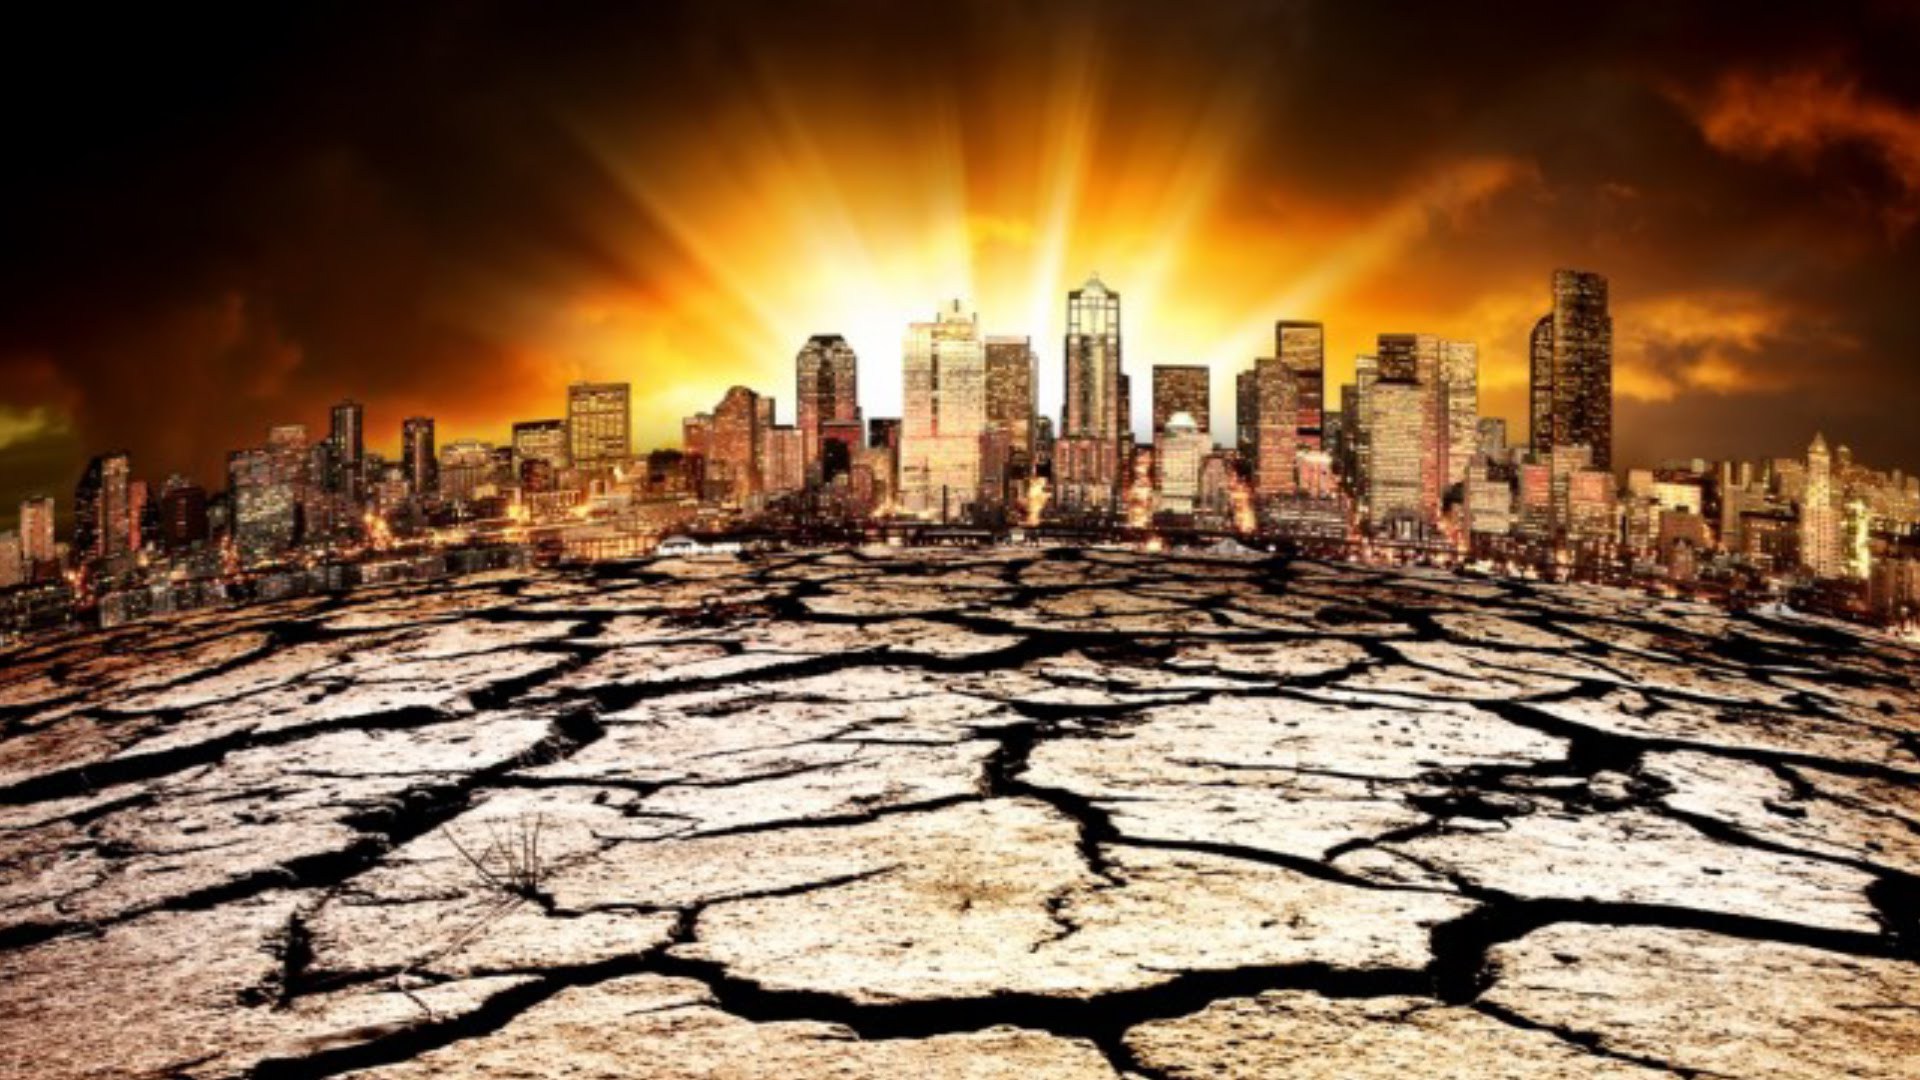 "Вопрос жизни и смерти": ученые требуют у политиков остановить глобальное потепление